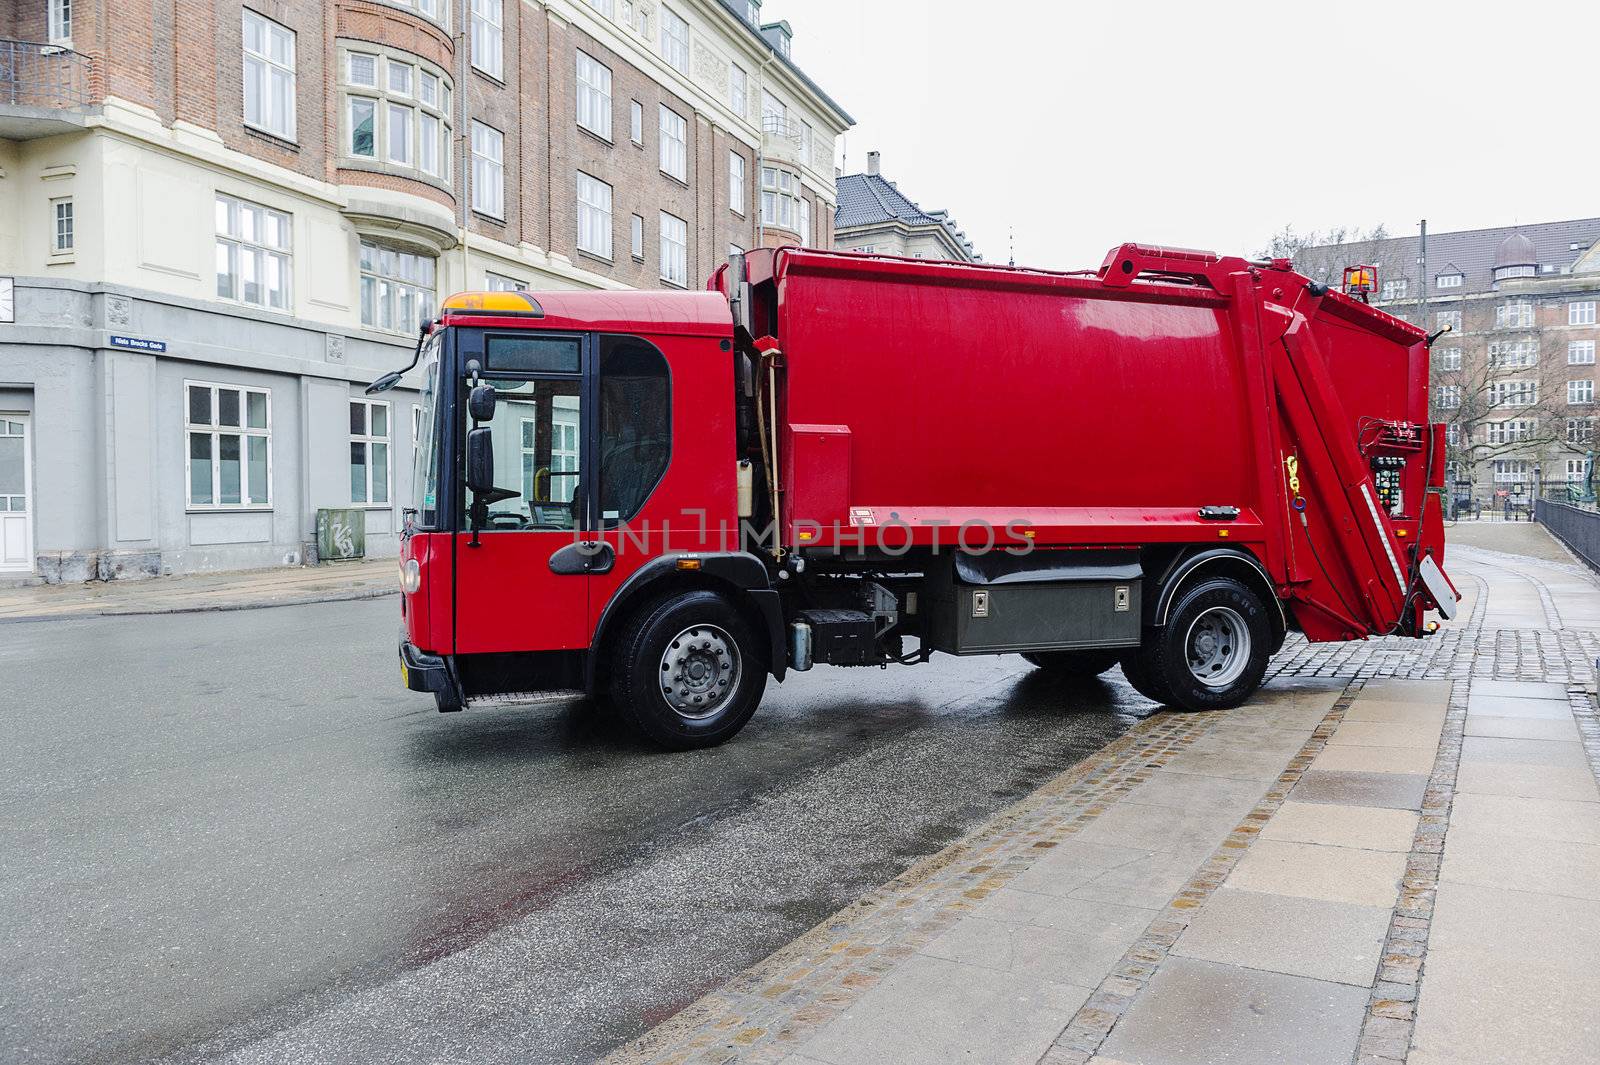 Red garbage disposal truck by MOELLERTHOMSEN